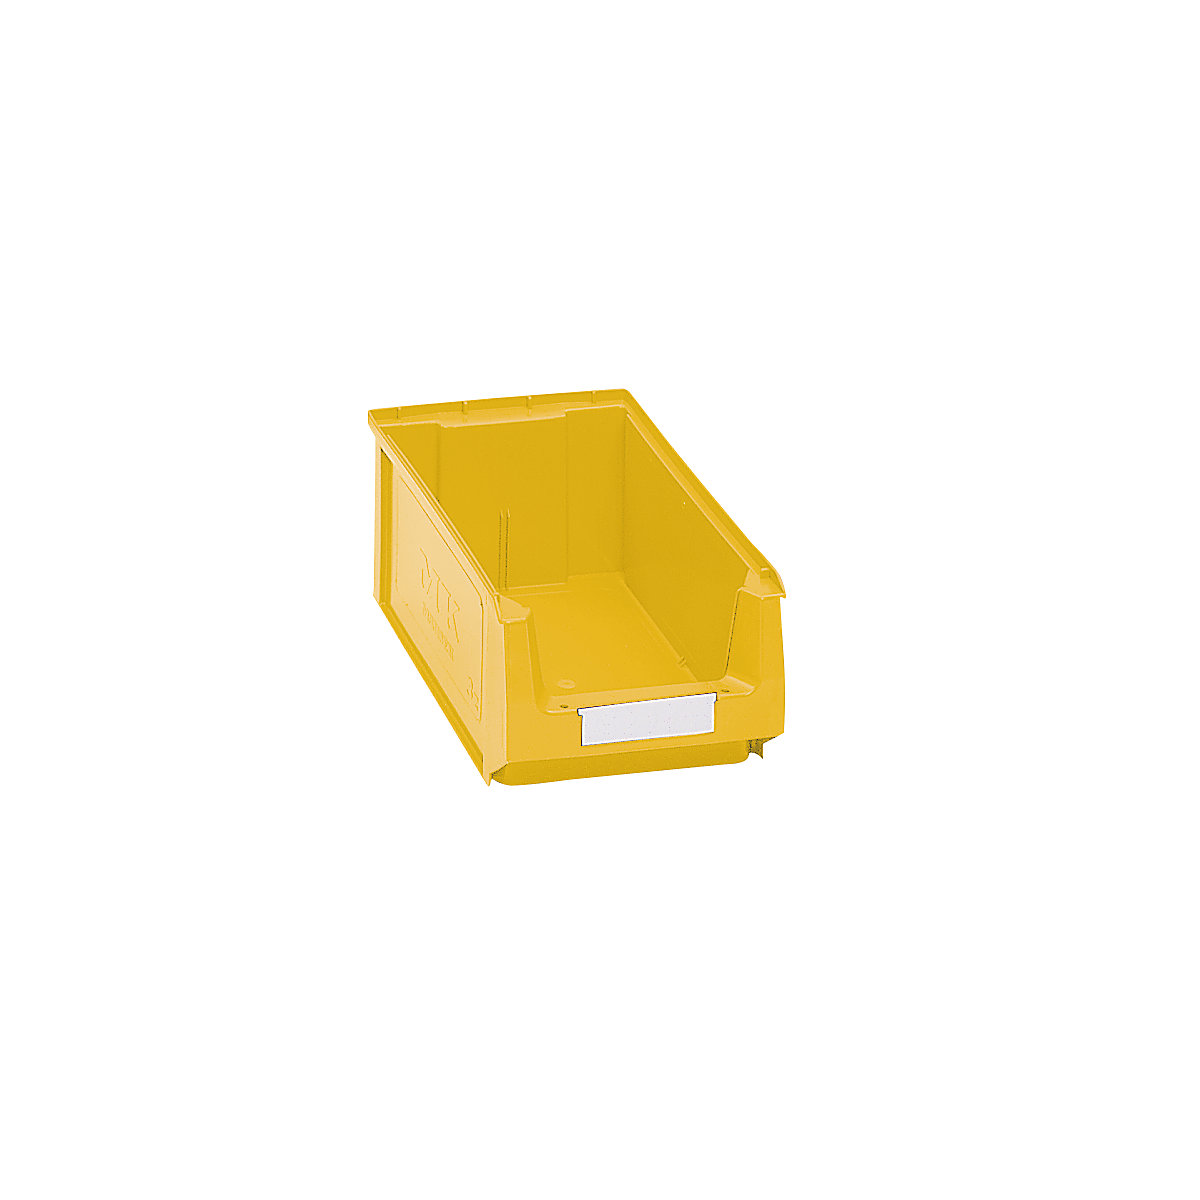 Sichtlagerkasten aus Polyethylen mauser, LxBxH 350 x 210 x 140 mm, gelb, VE 14 Stk-7